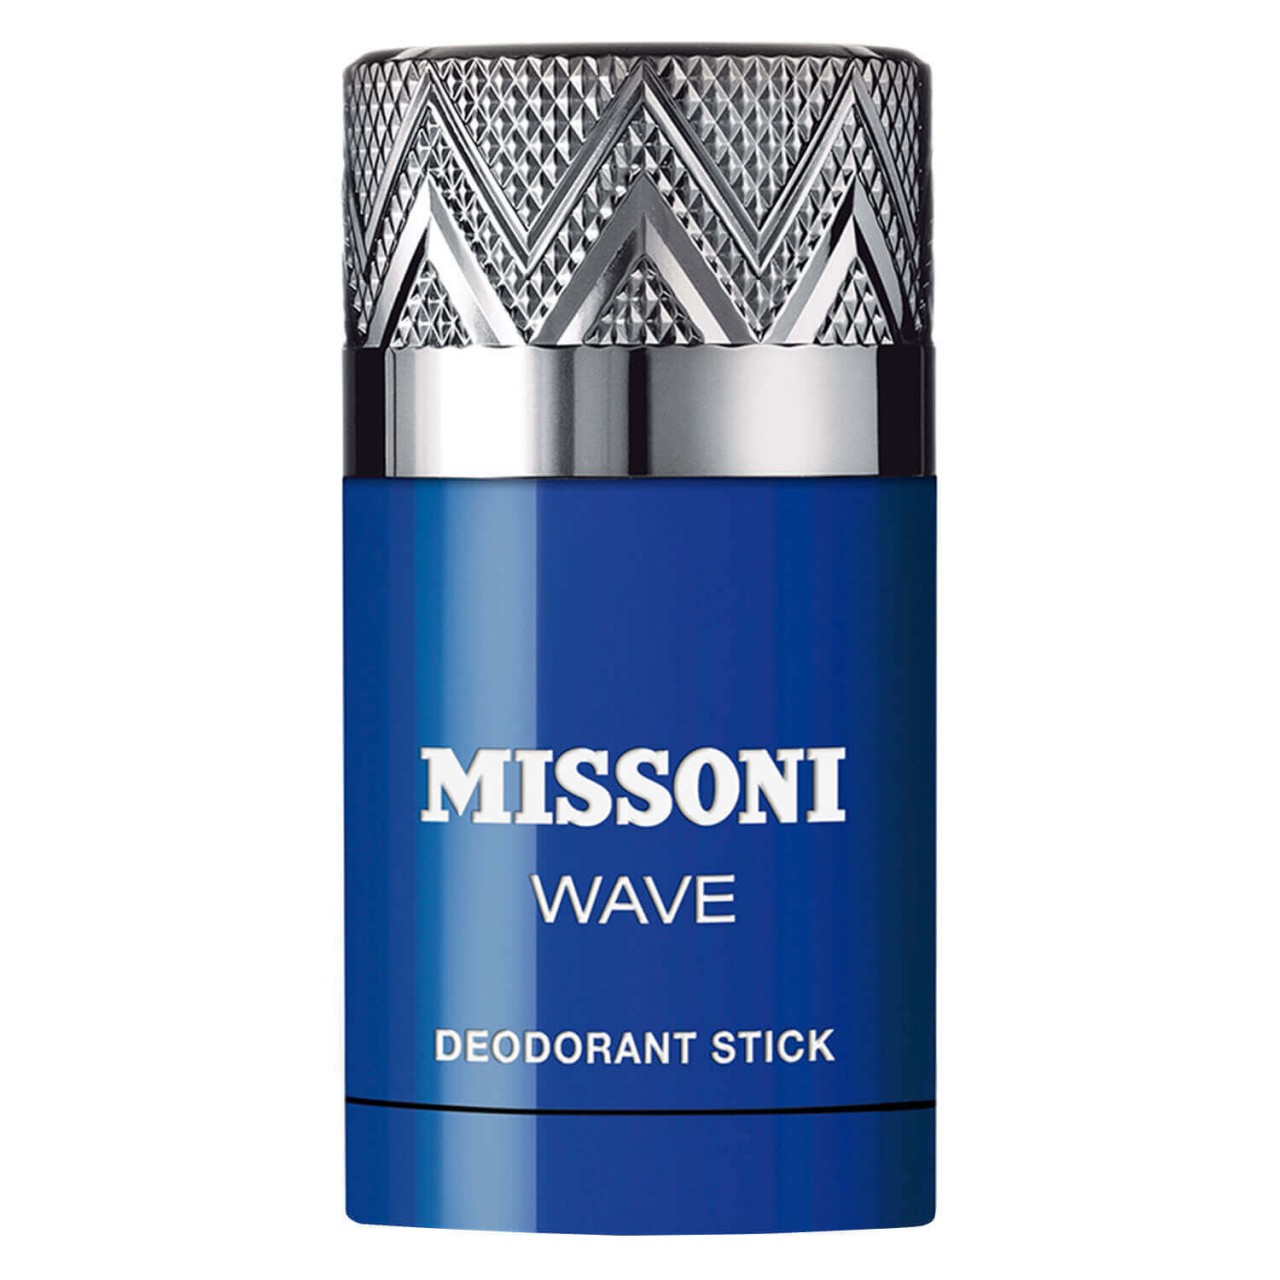 Missoni Wave - Deodorant Stick von Missoni